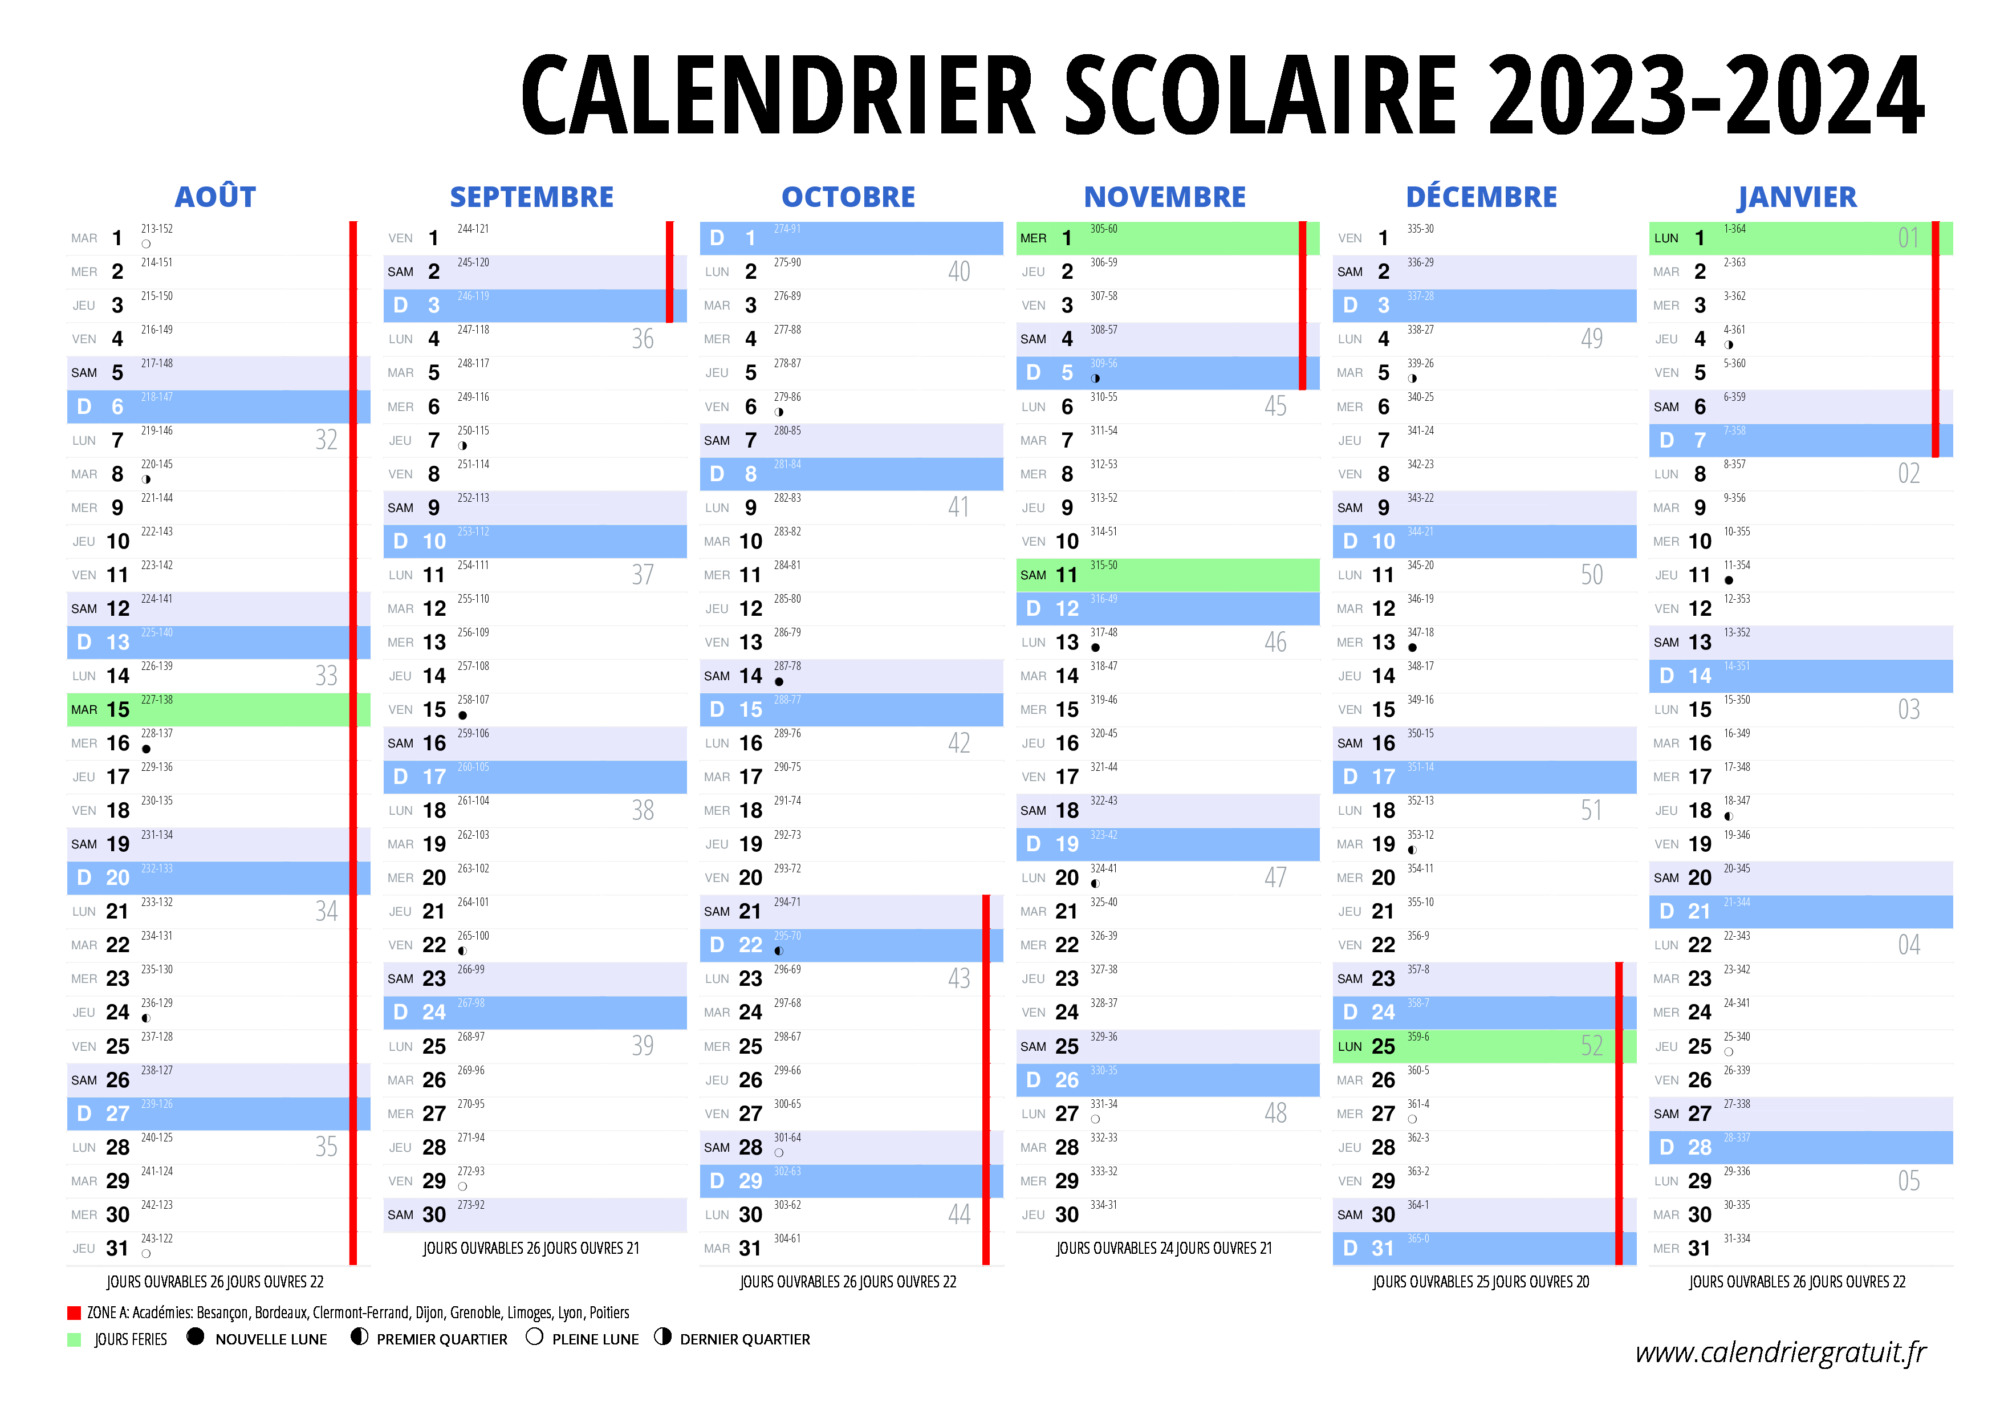 Les dates de vacances scolaires à Lyon en 2023-2024